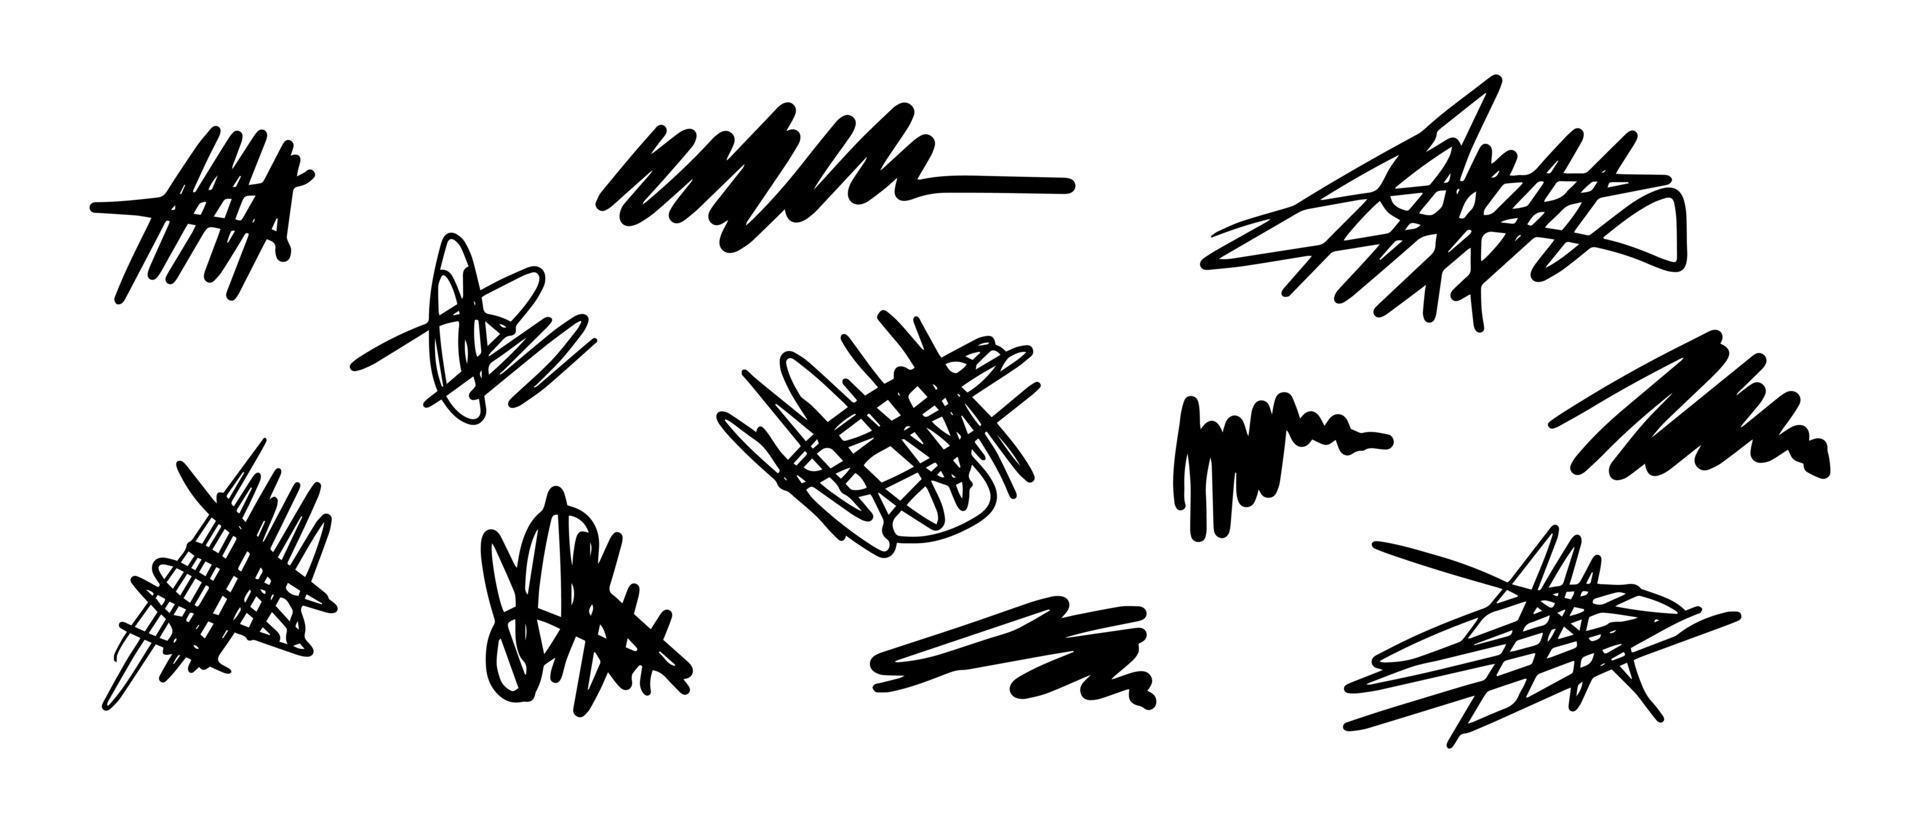 disegnato a mano di schizzo di groviglio di scarabocchi. scarabocchio astratto, modello di doodle di caos isolato su priorità bassa bianca. illustrazione vettoriale. vettore